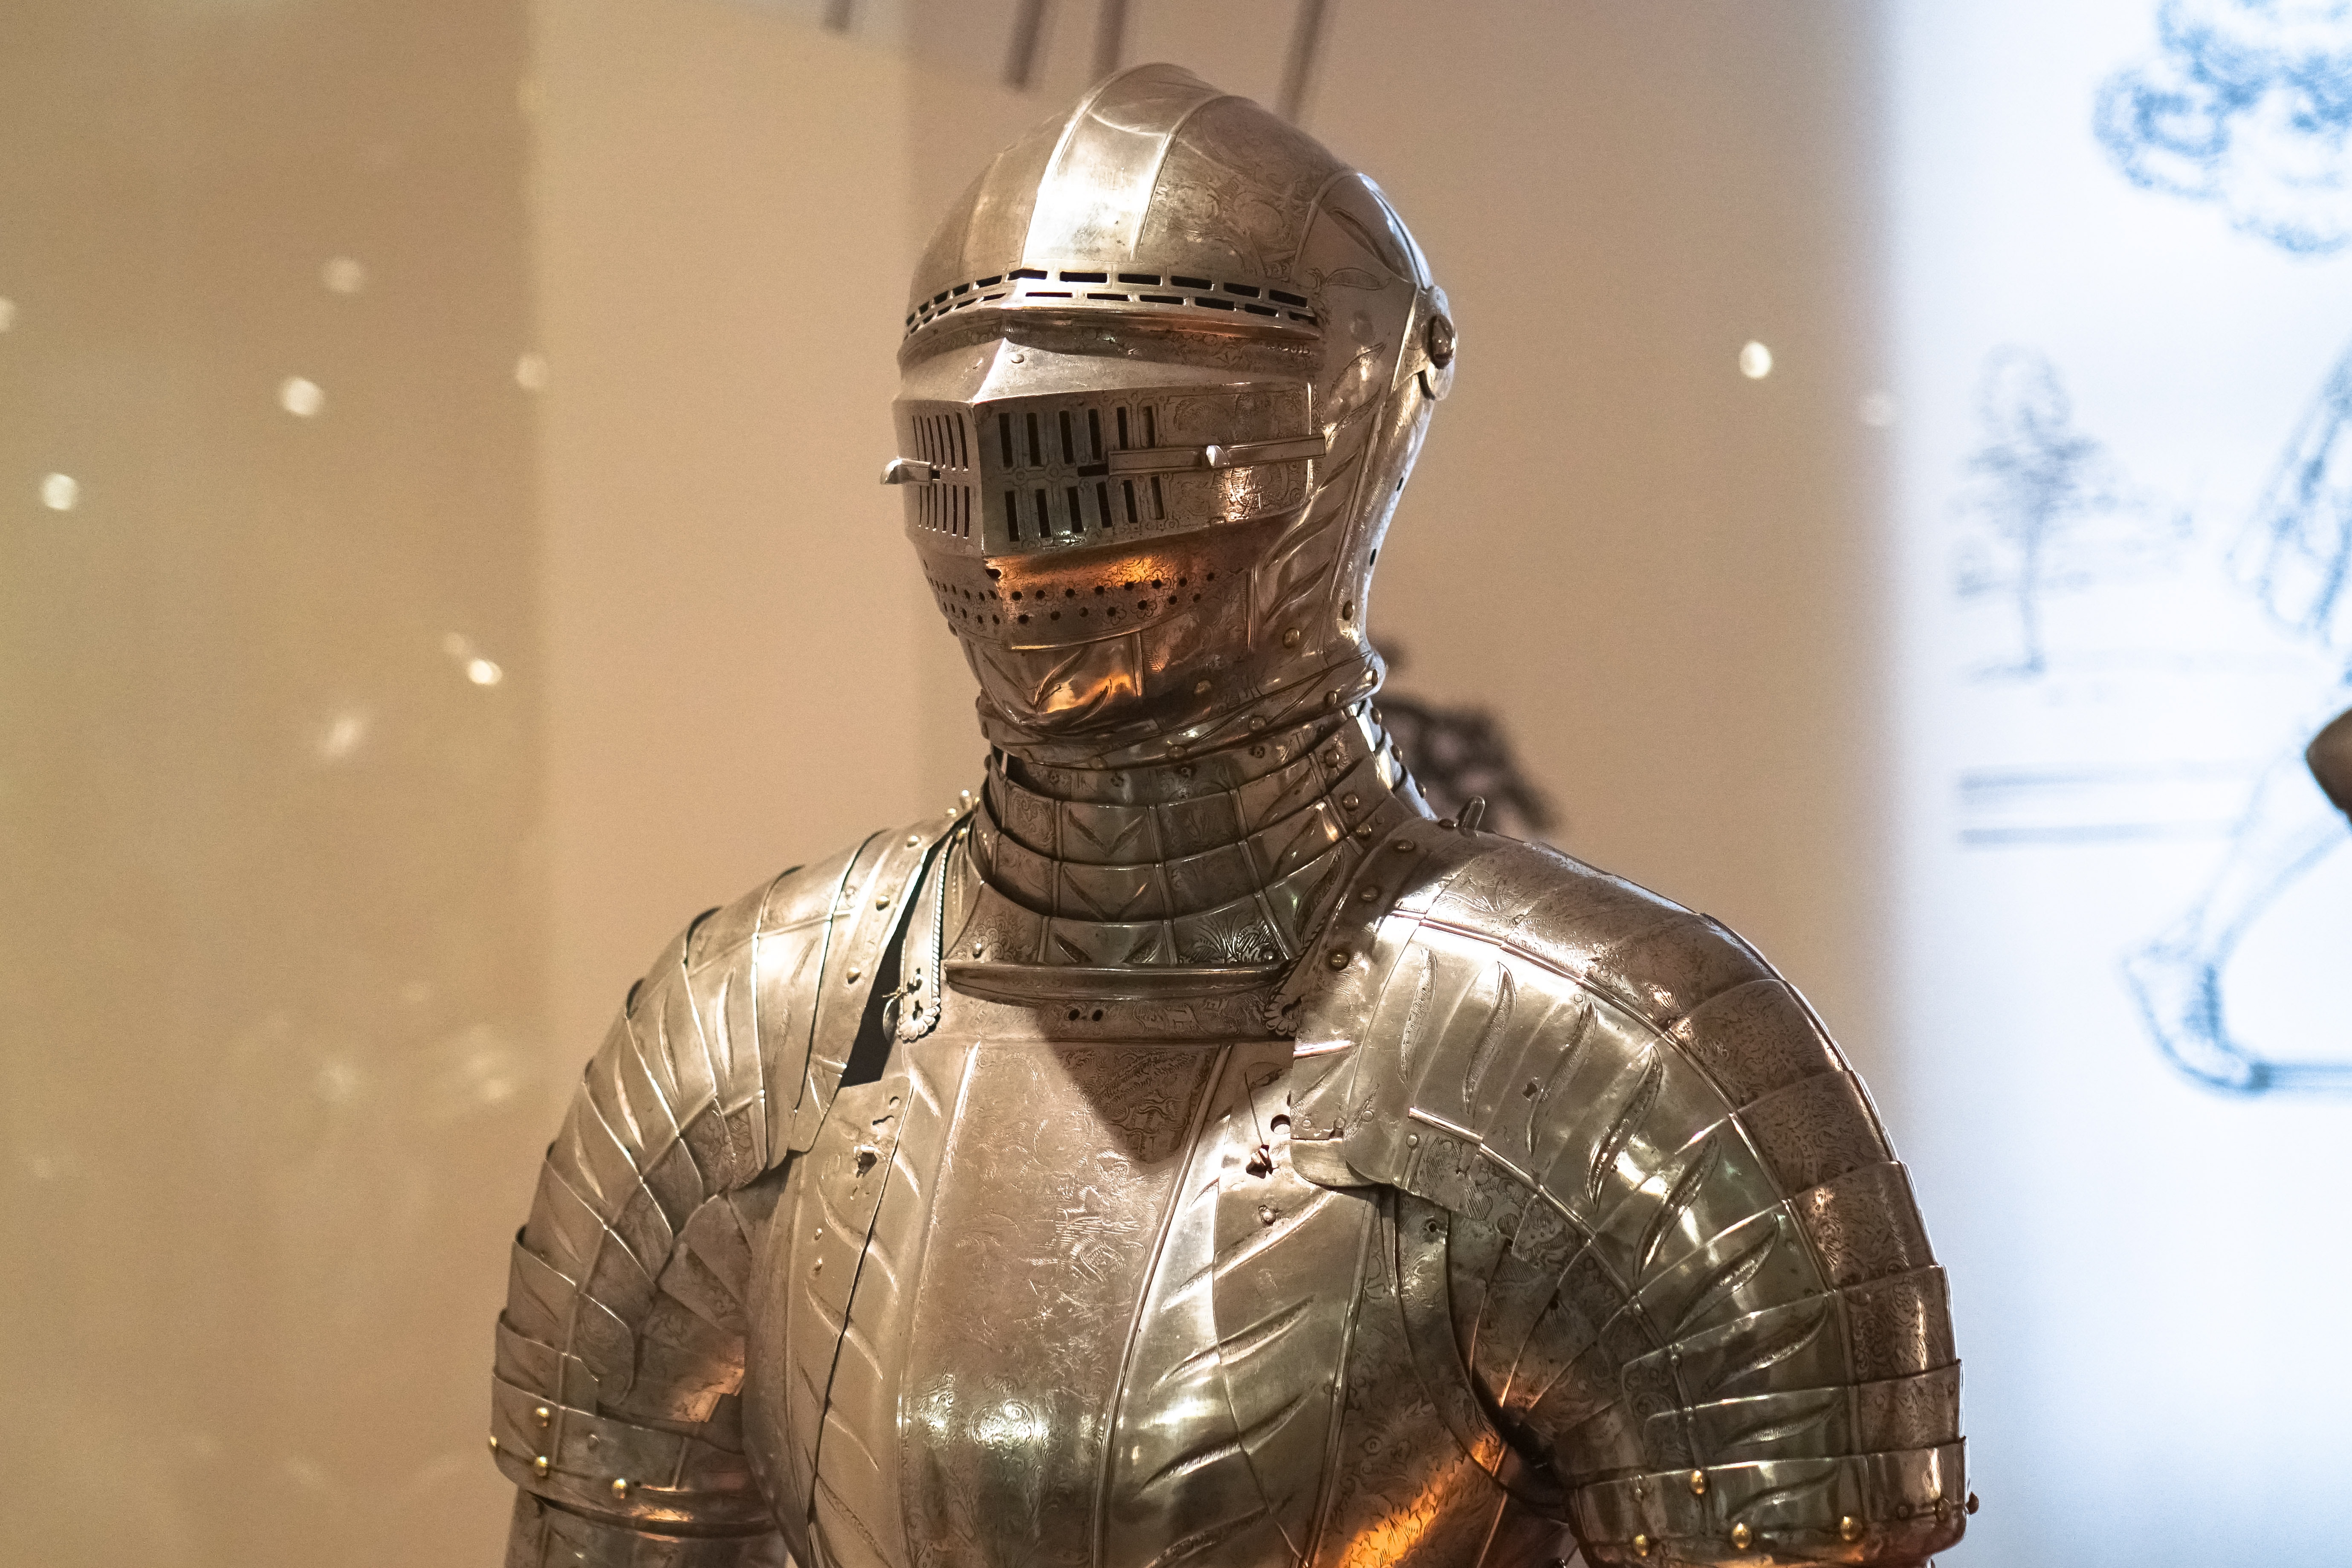 Knight's armor, the Army Museum, Paris